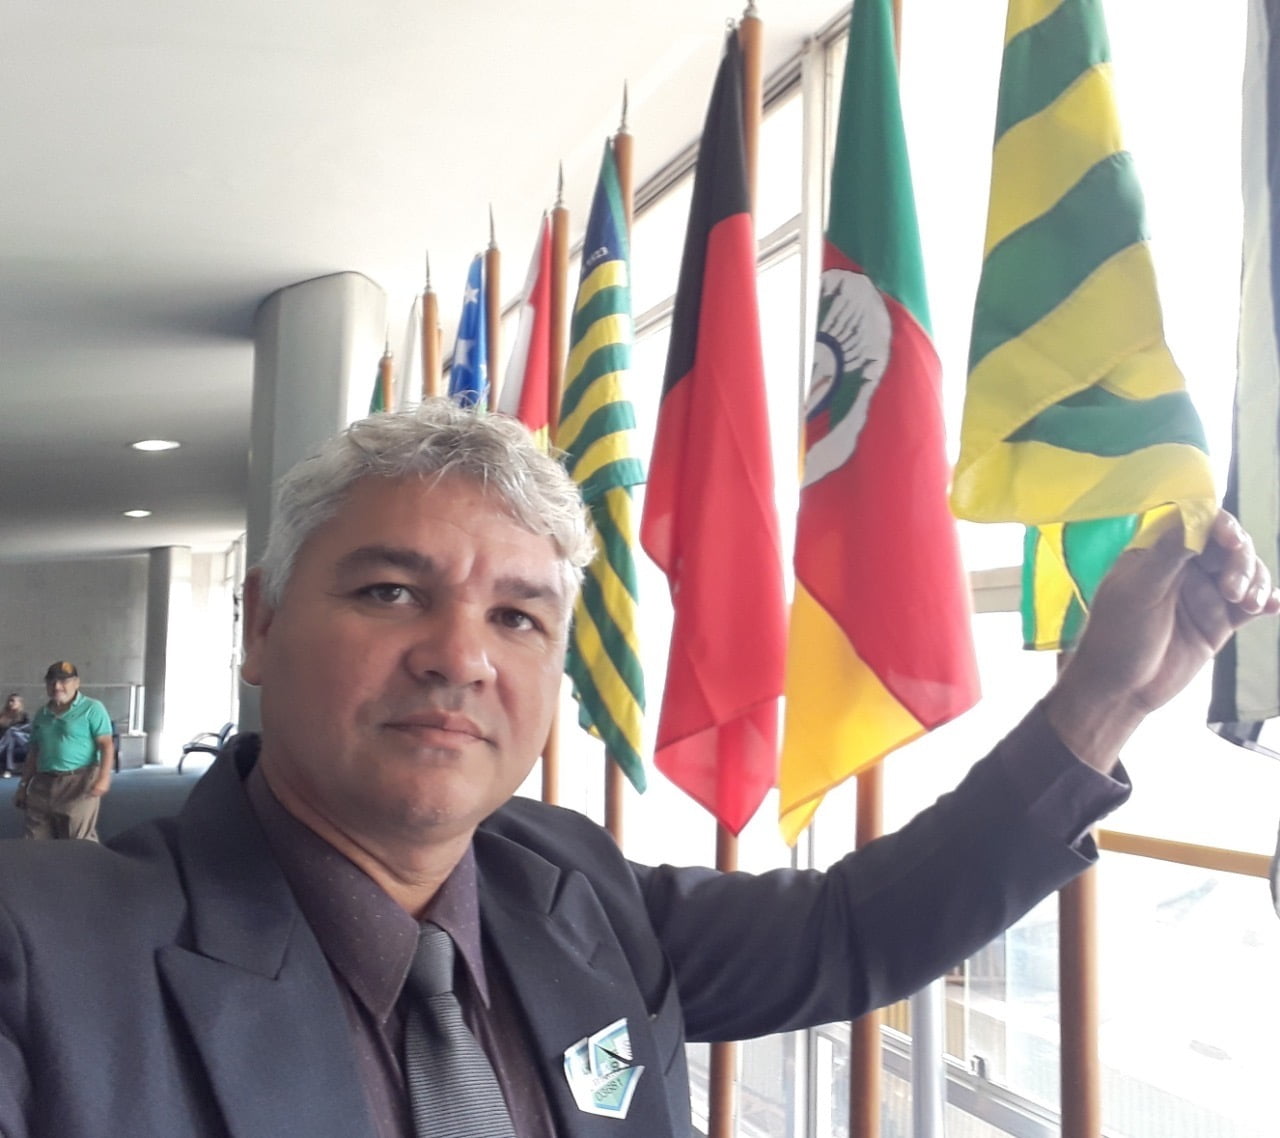 Assessor de Aurélio Goiano diz ter sido filiado ao PL sem seu consentimento em Parauapebas